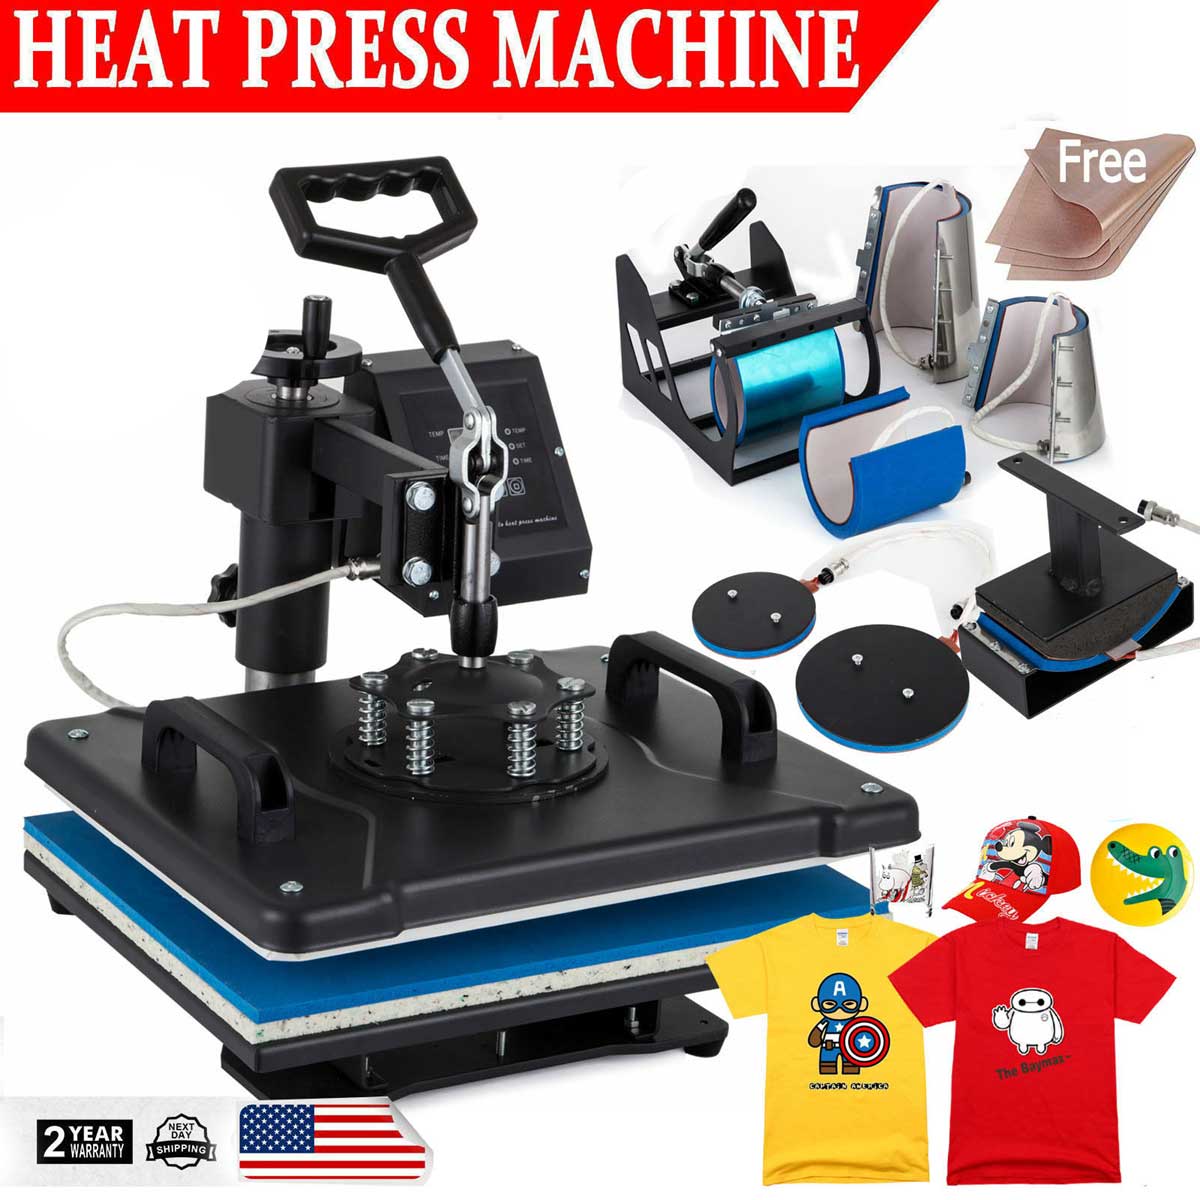 15 Best Heat Press Machines of 2020 